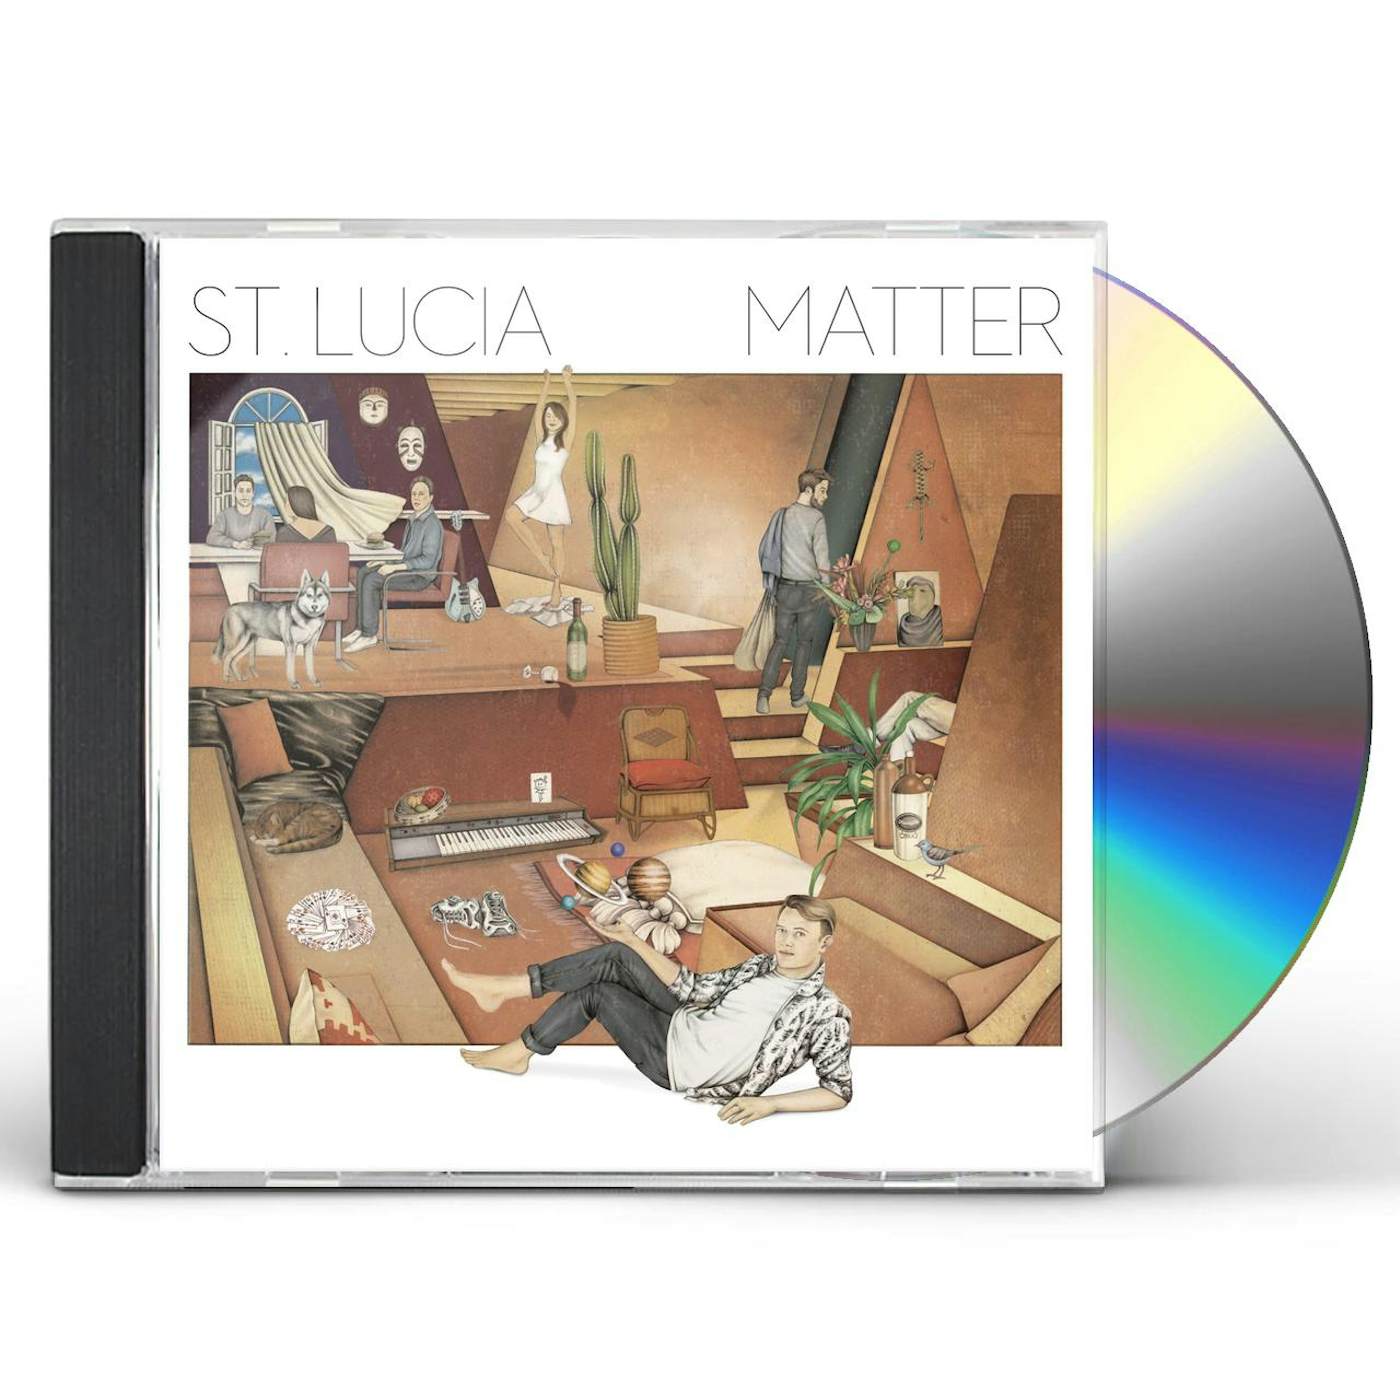 St. Lucia MATTER CD